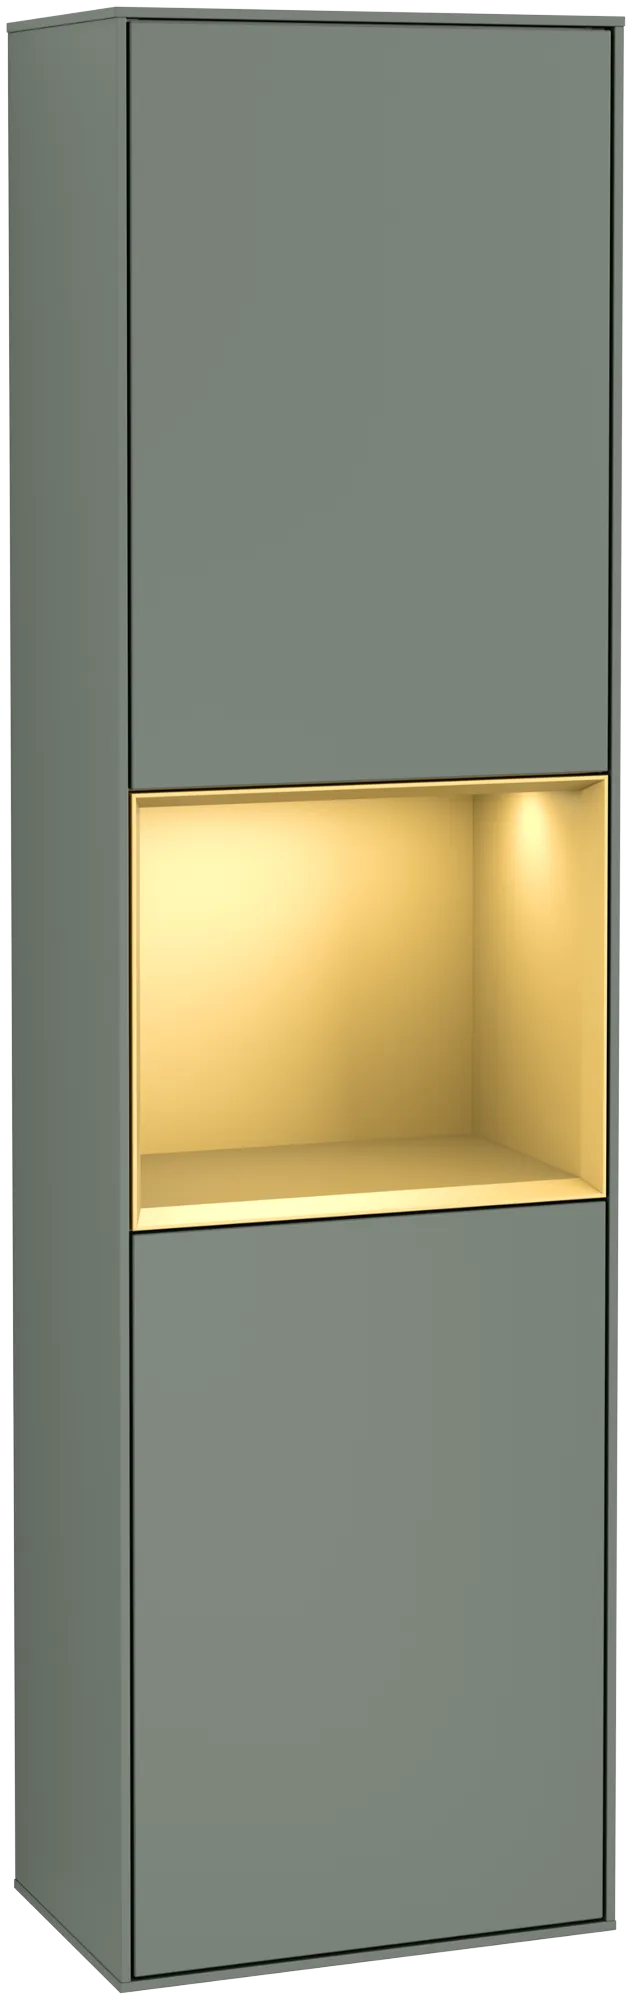 Bild von VILLEROY BOCH Finion Hochschrank, mit Beleuchtung, 2 Türen, 418 x 1516 x 270 mm, Olive Matt Lacquer / Gold Matt Lacquer #G460HFGM